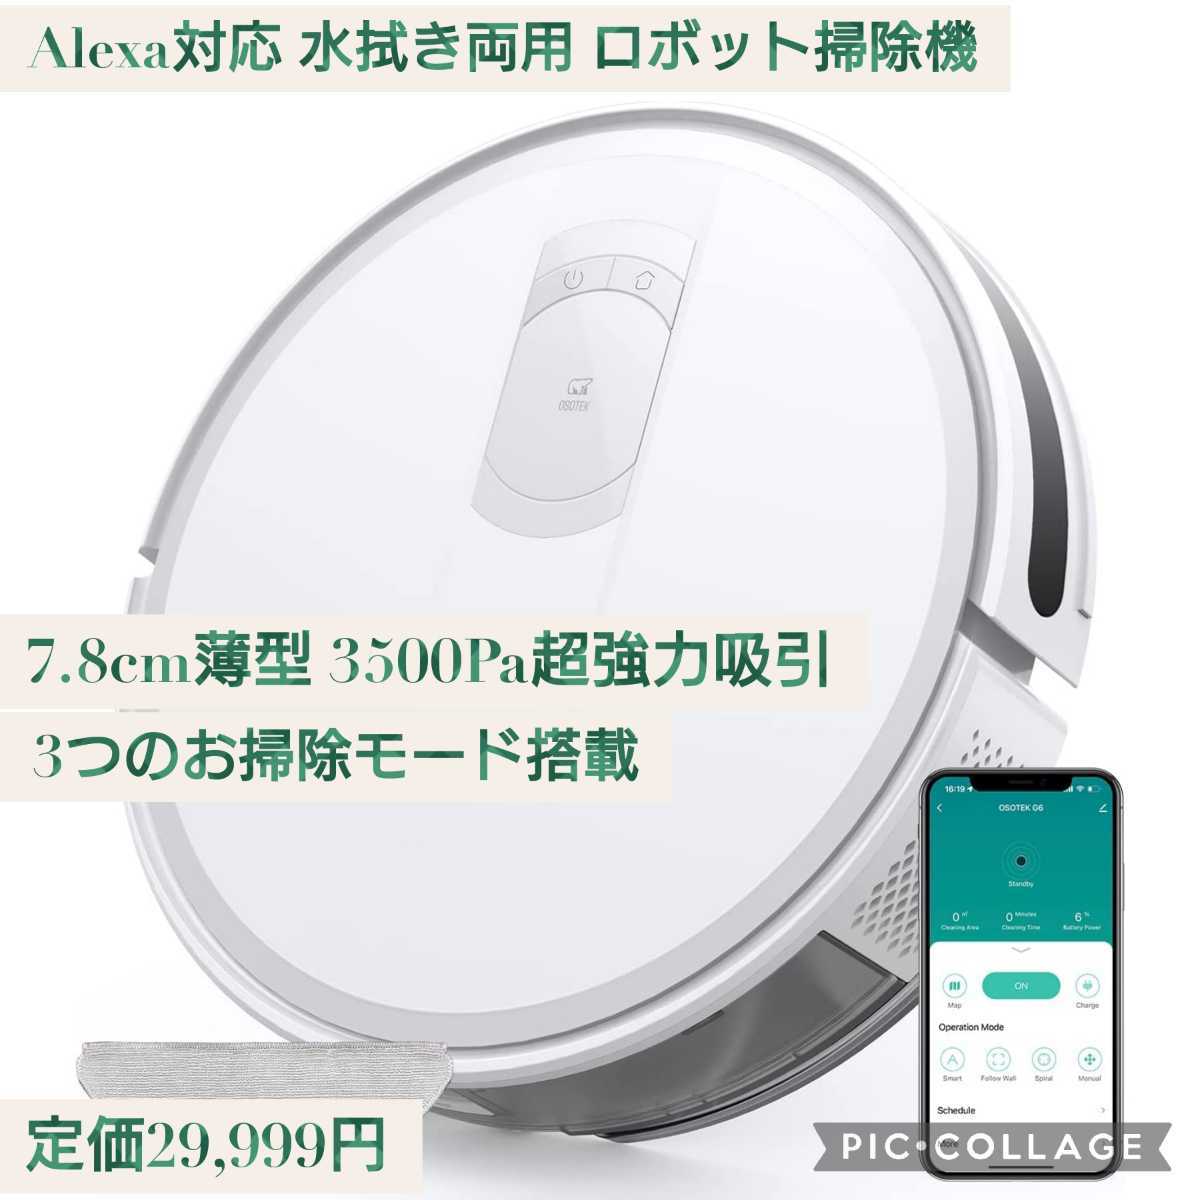 新品☆定価29,999円 Alexa対応 水拭き両用 ロボット掃除機 3500Pa超